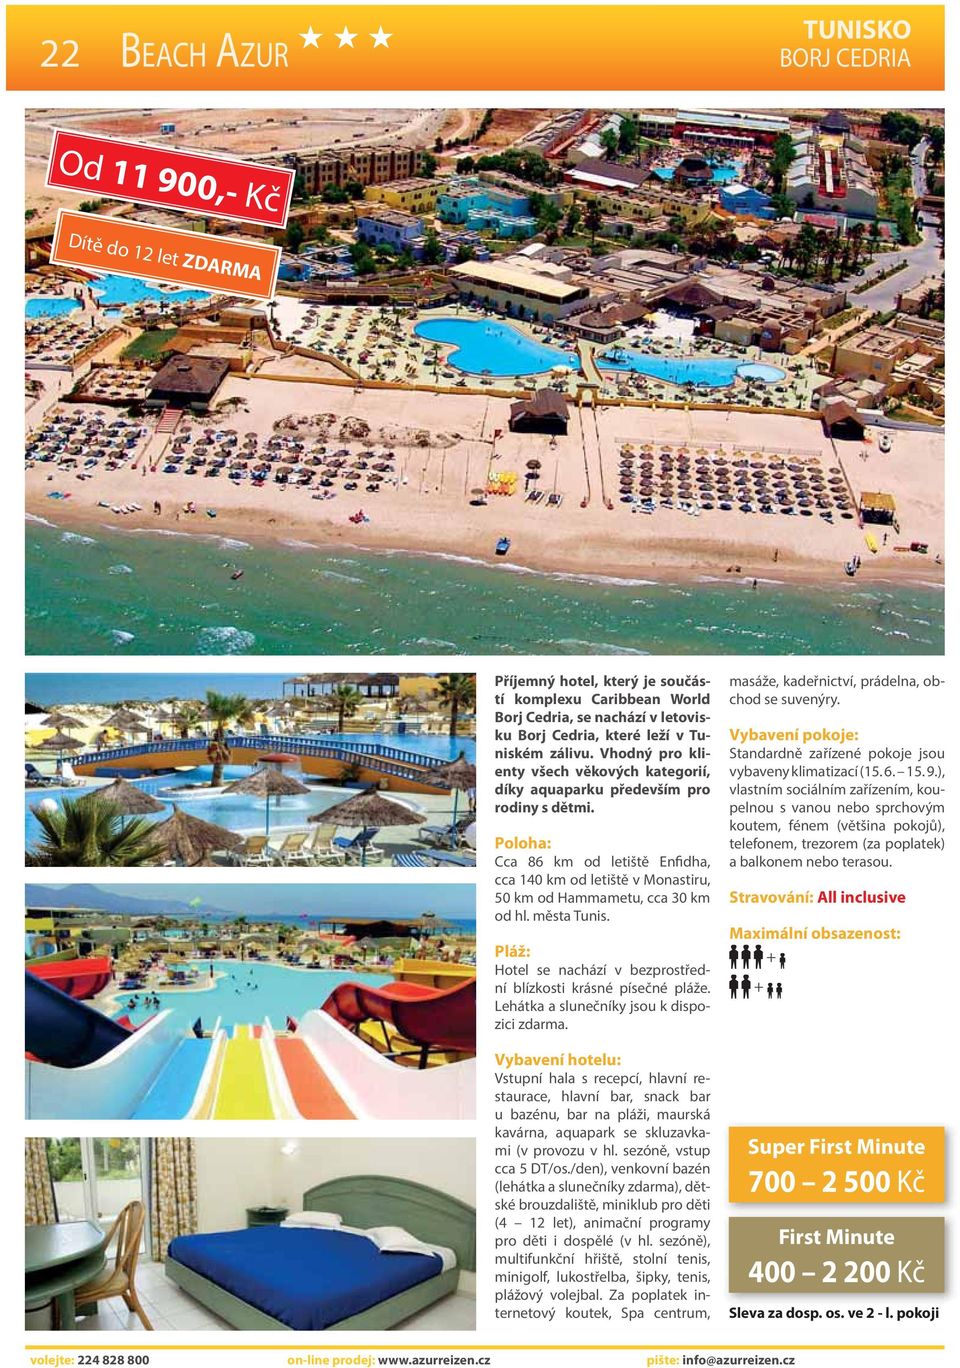 města Tunis. Hotel se nachází v bezprostřední blízkosti krásné písečné pláže. Lehátka a slunečníky jsou k dispozici zdarma.